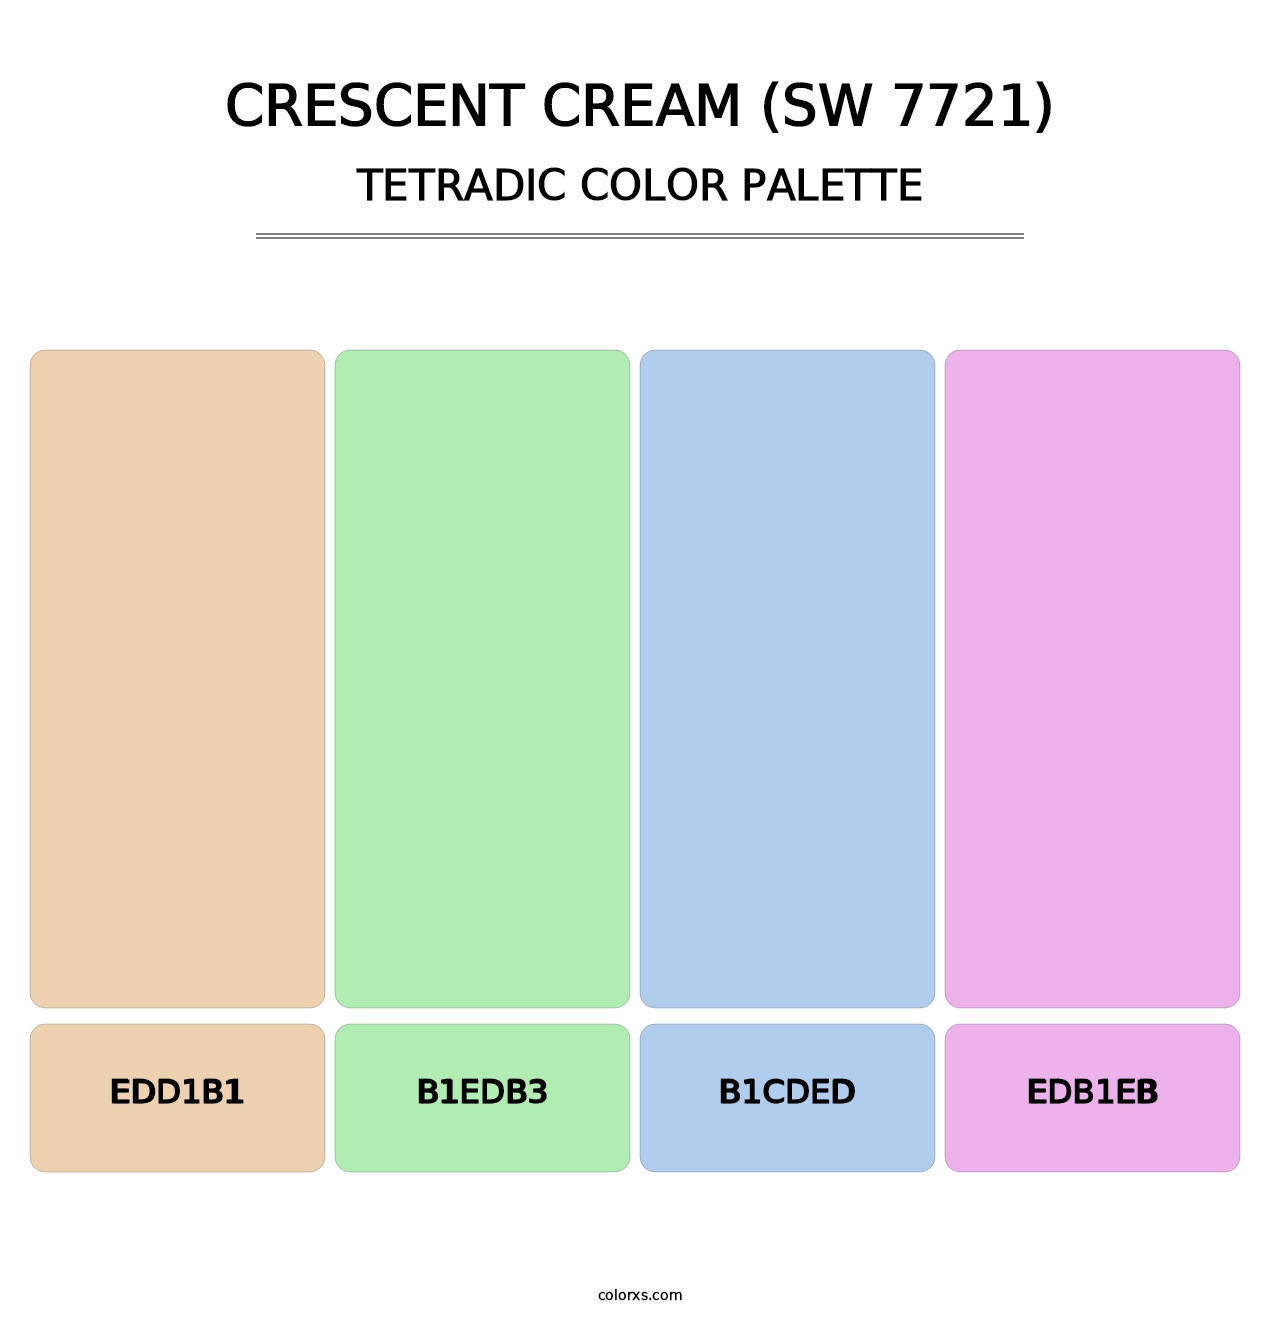 Crescent Cream (SW 7721) - Tetradic Color Palette